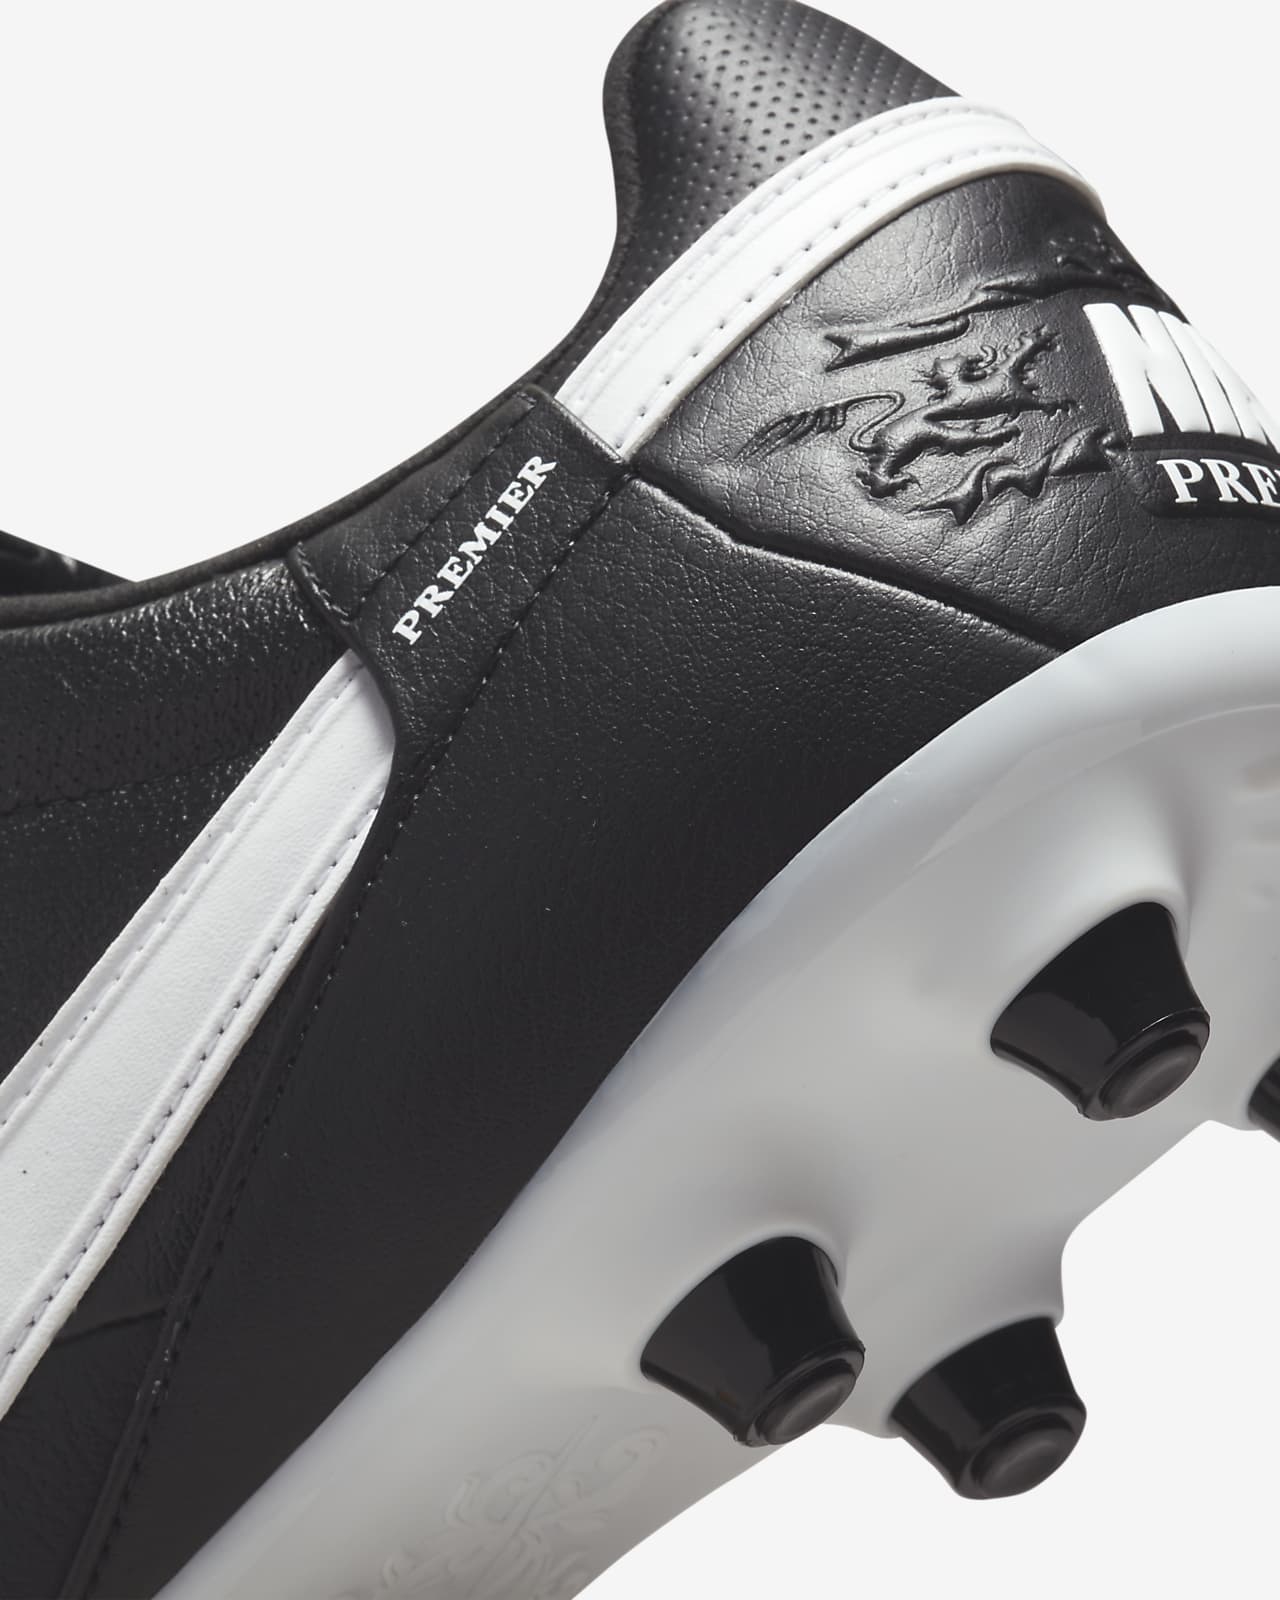 Krankzinnigheid Voorspellen Badkamer The Nike Premier 3 FG Firm-Ground Football Boots. Nike ID